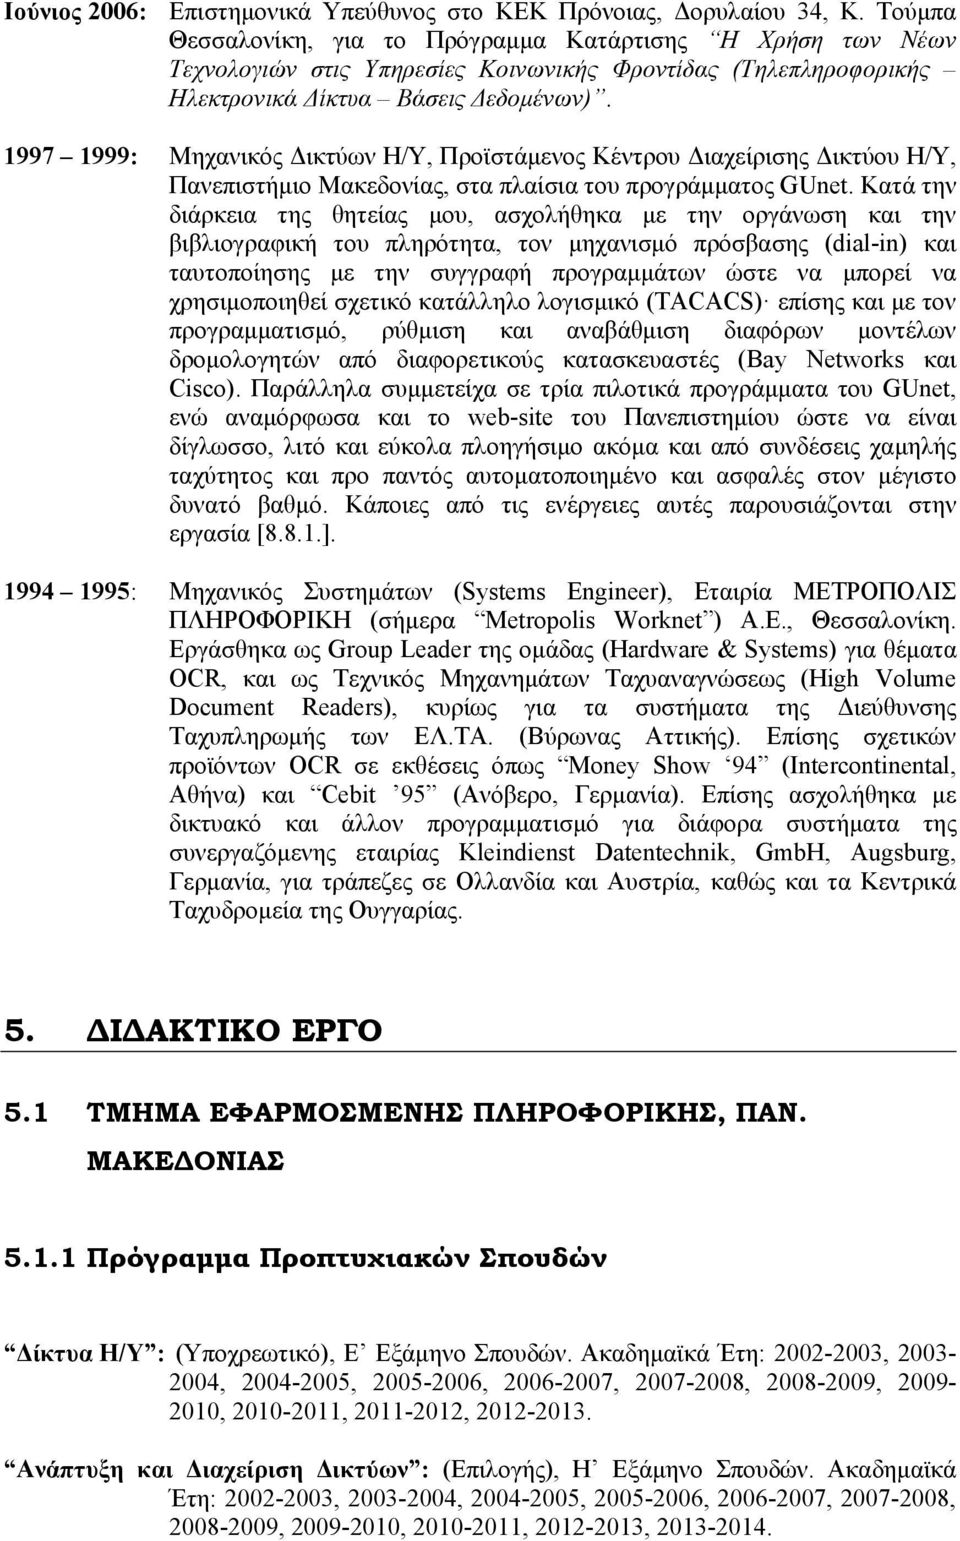 1997 1999: Μηχανικός Δικτύων Η/Υ, Προϊστάμενος Κέντρου Διαχείρισης Δικτύου Η/Υ, Πανεπιστήμιο Μακεδονίας, στα πλαίσια του προγράμματος GUnet.